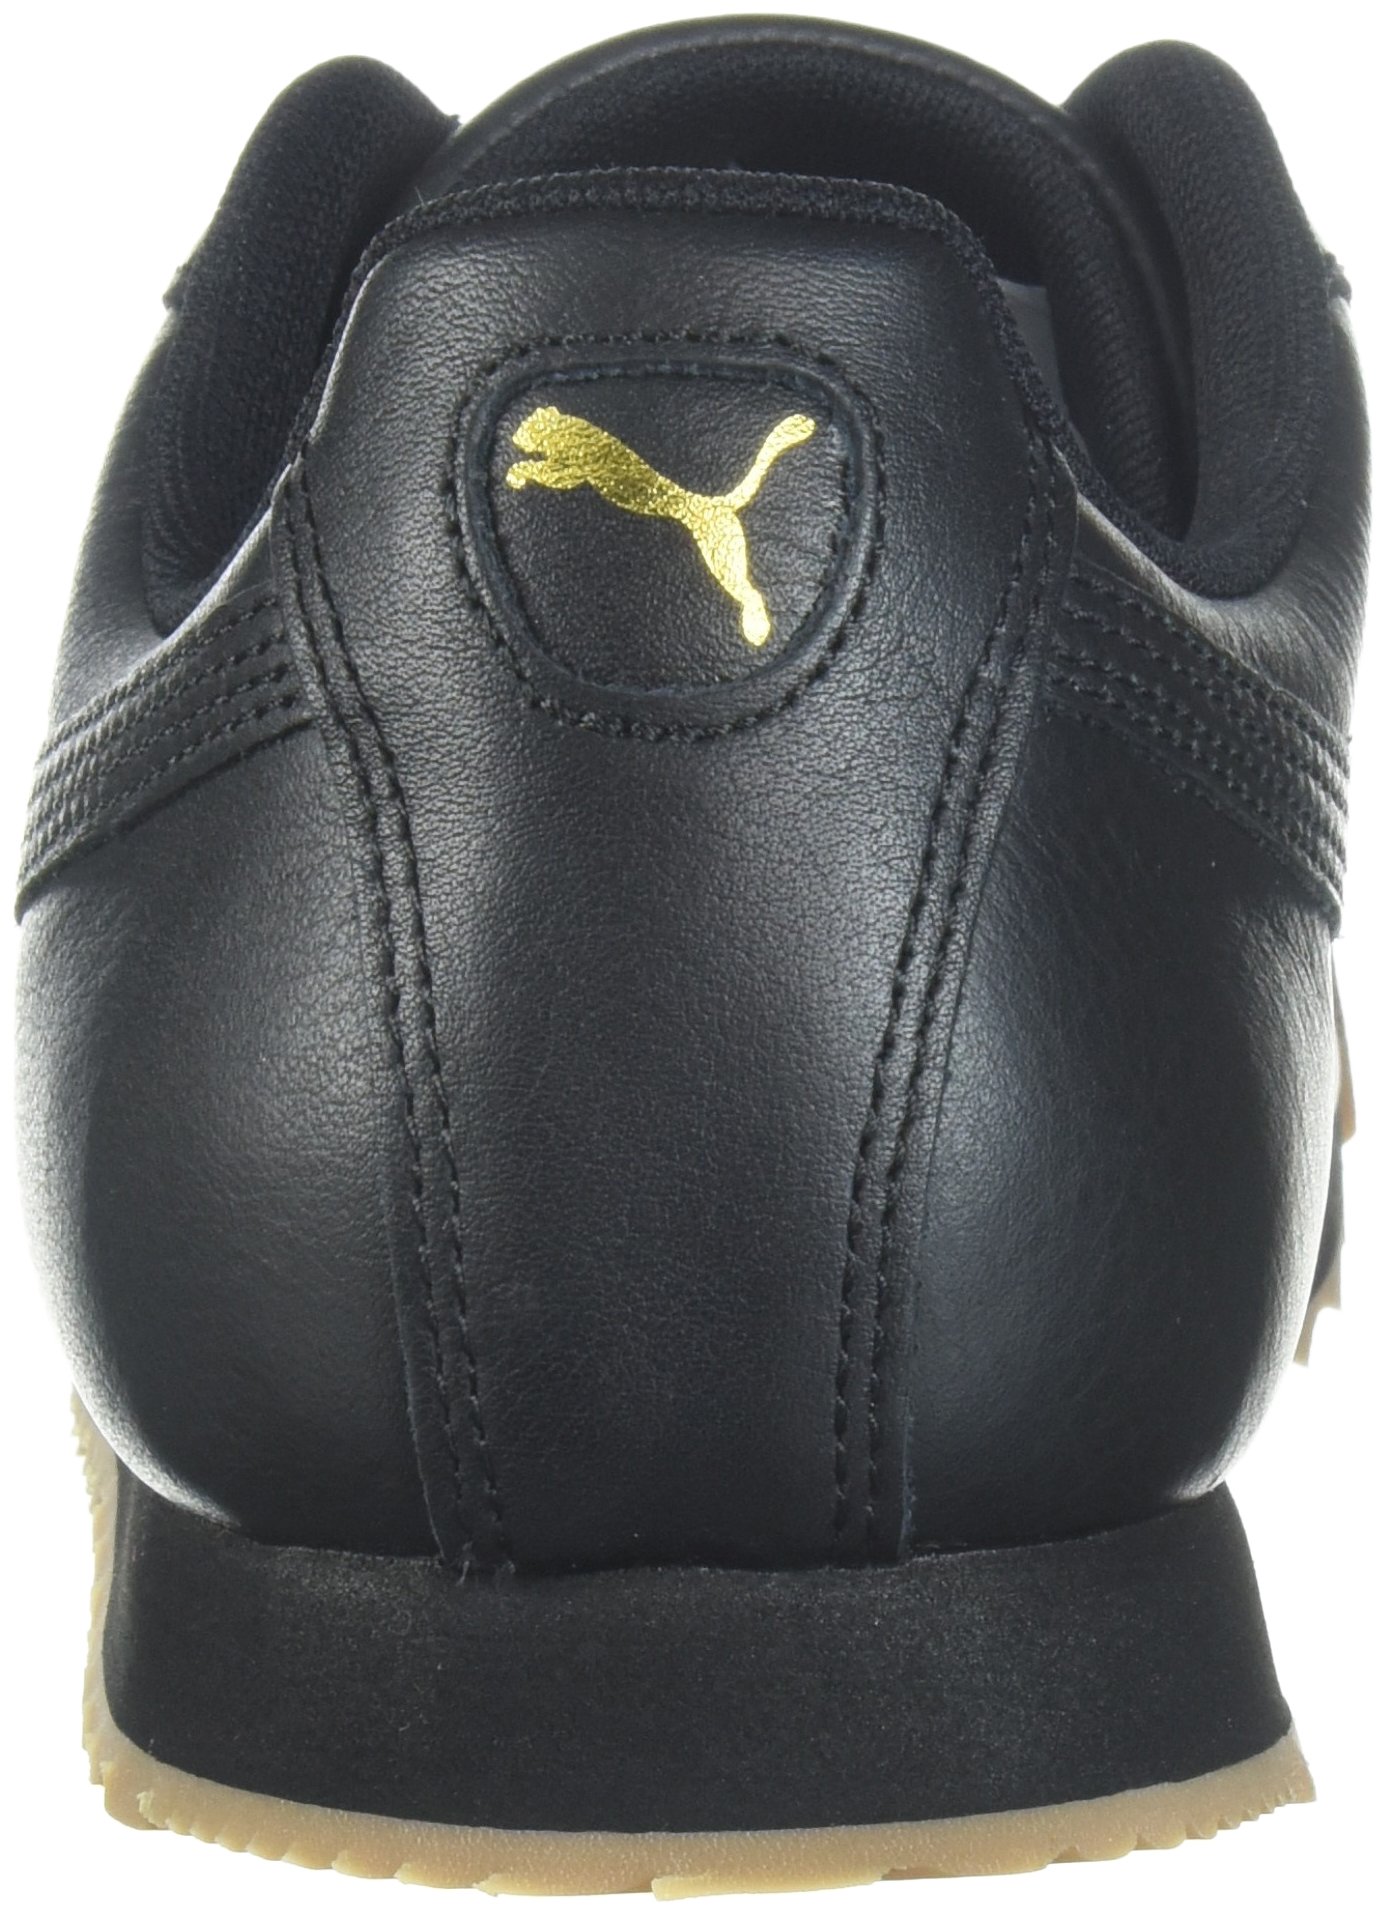 PUMA 366408-02 : Men's Roma Classic Gum Sneaker Black Team Gold (10 D(M) US) - image 4 of 8